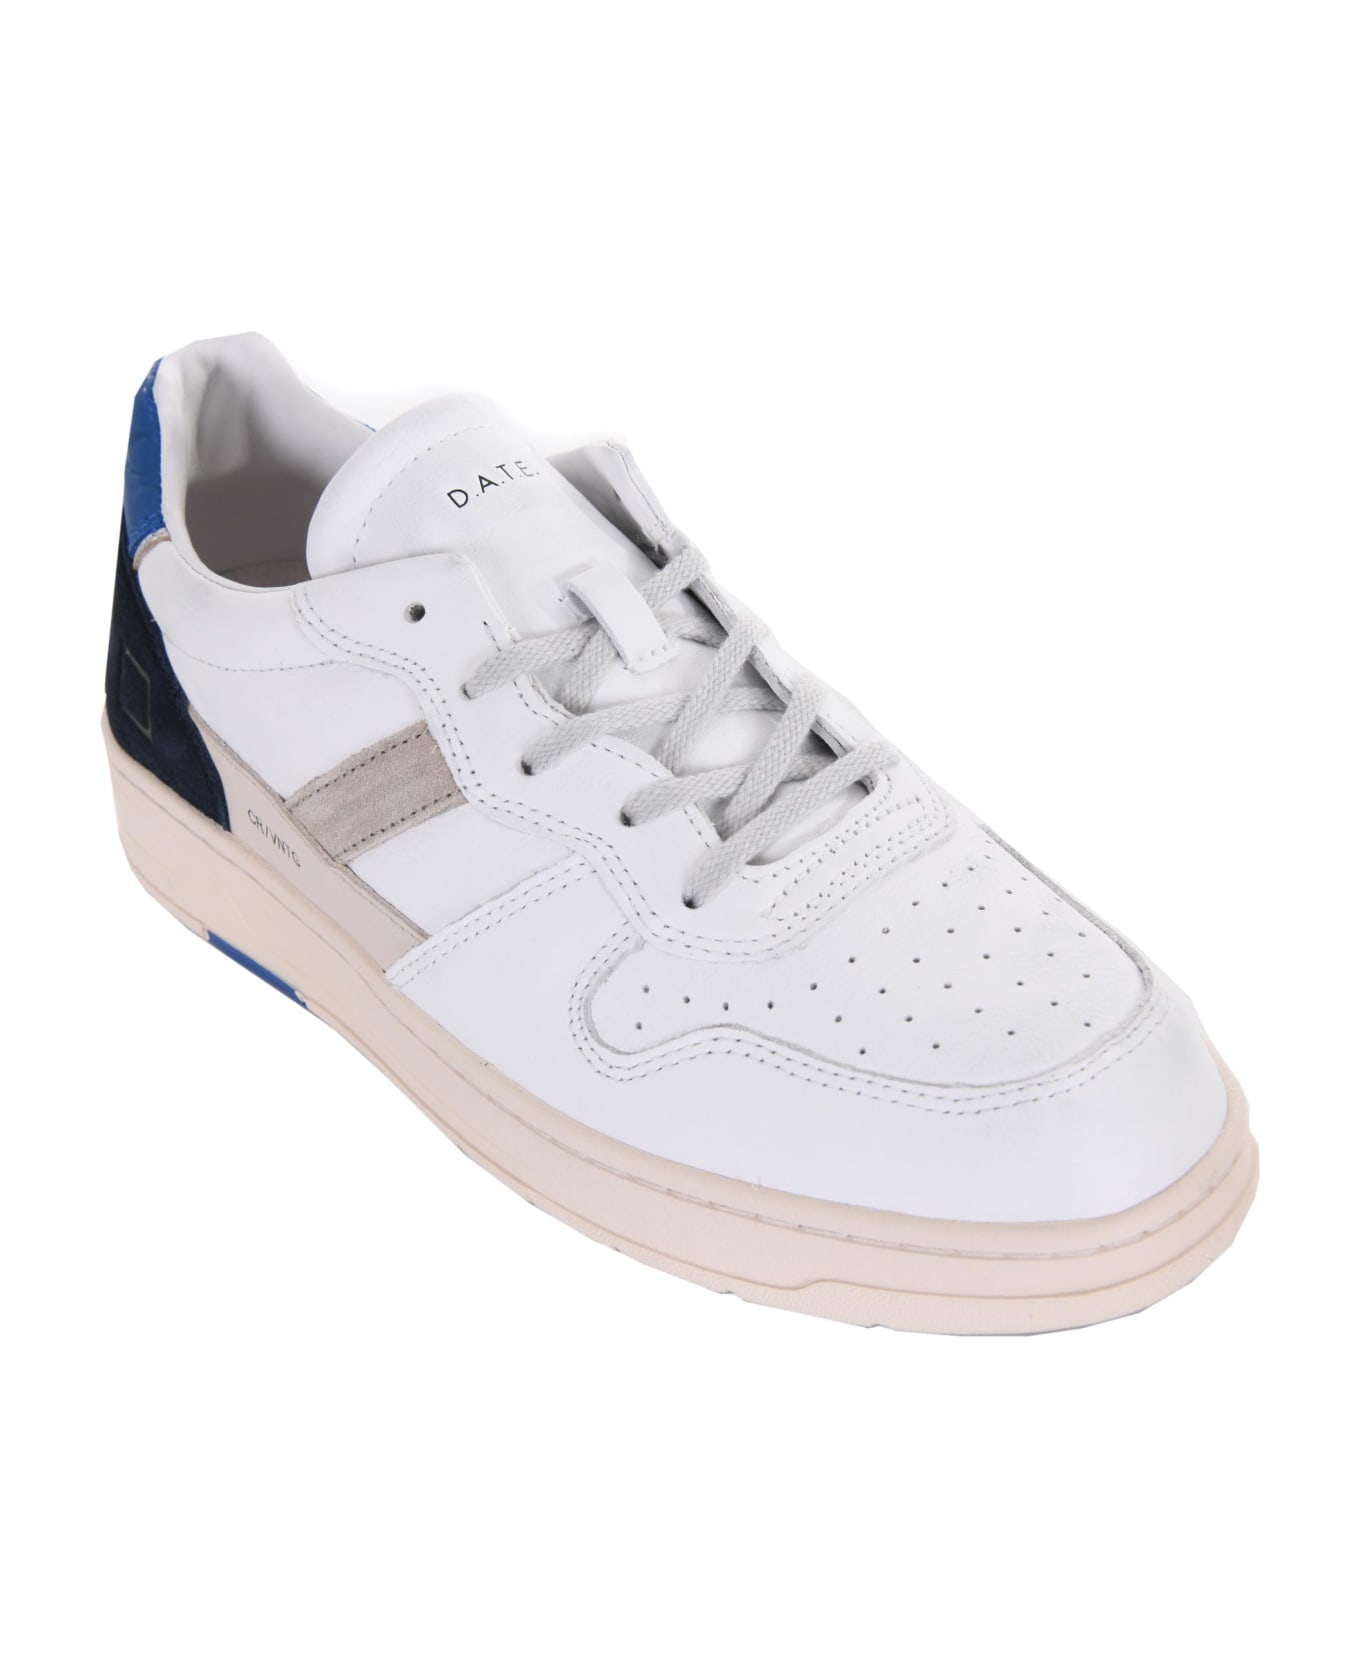 D.A.T.E. Men's Sneakers D.a.t.e. "court 2.0" - Bianco/blu